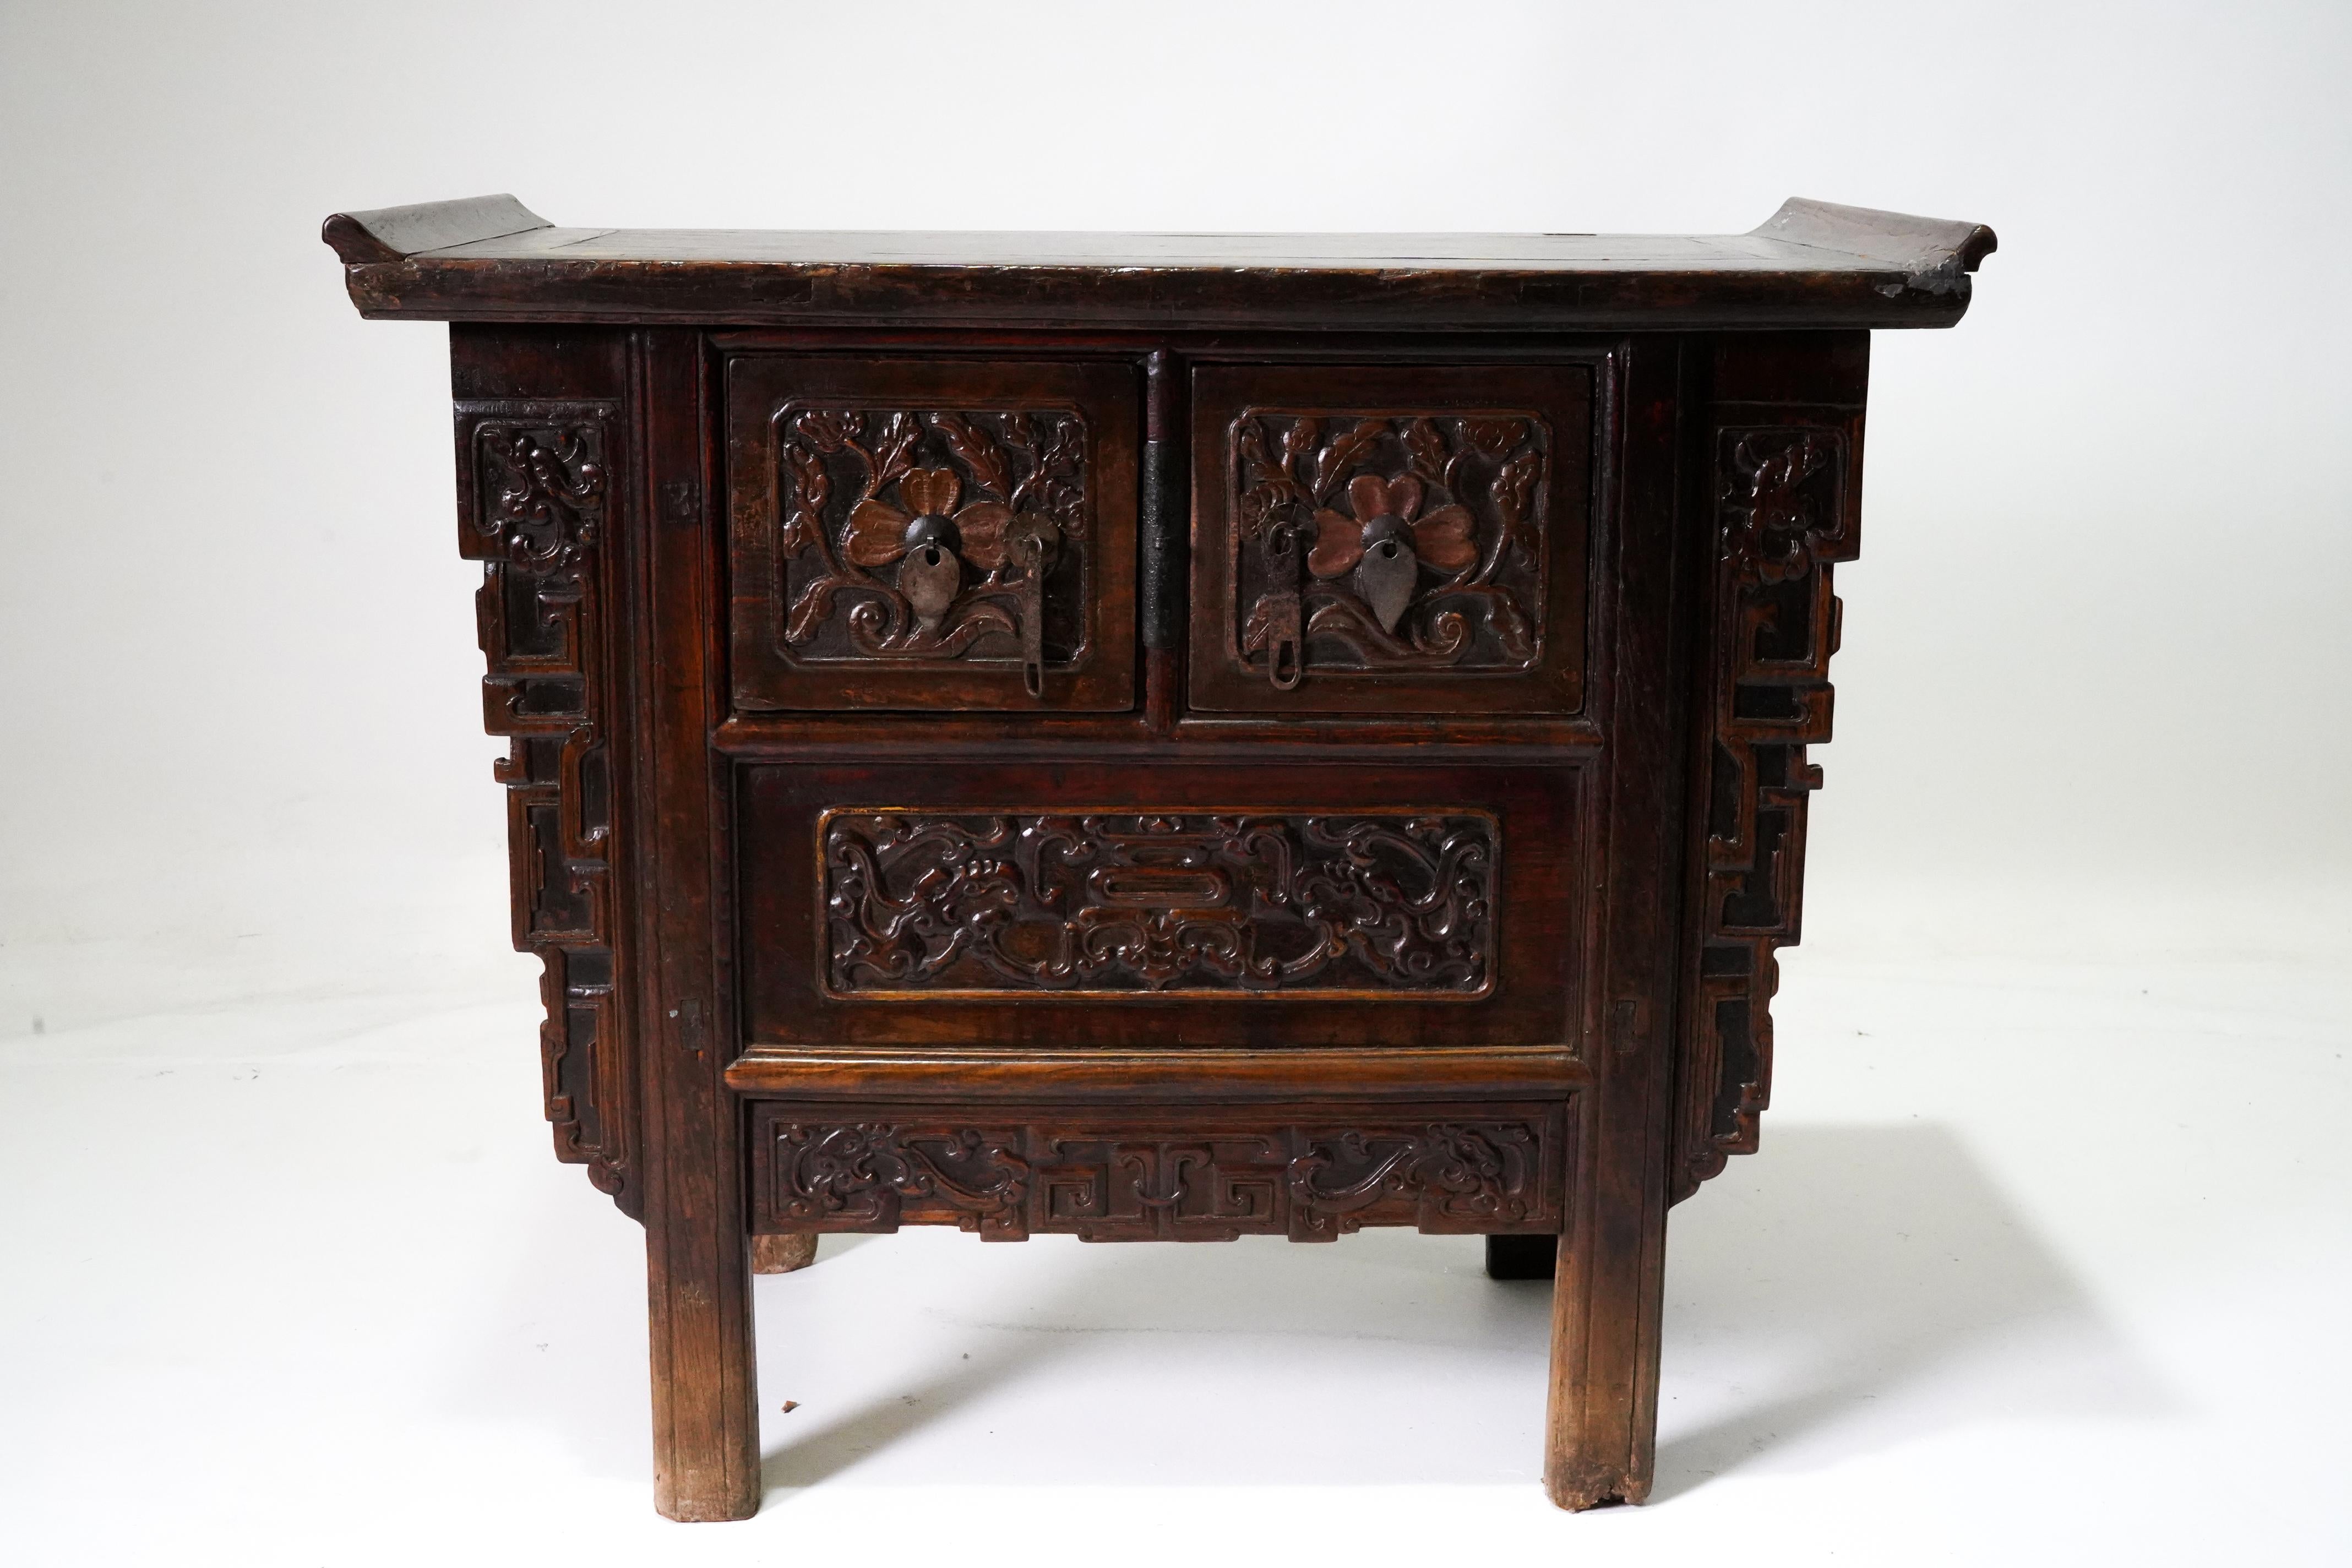 Un meuble papillon en bois de style chinois Qing du 19ème siècle, avec écoinçons, tiroirs et portes sculptés et une patine sombre de couleur sang de boeuf. Cet élégant petit coffret, parfois appelé meuble papillon, présente un plateau flottant